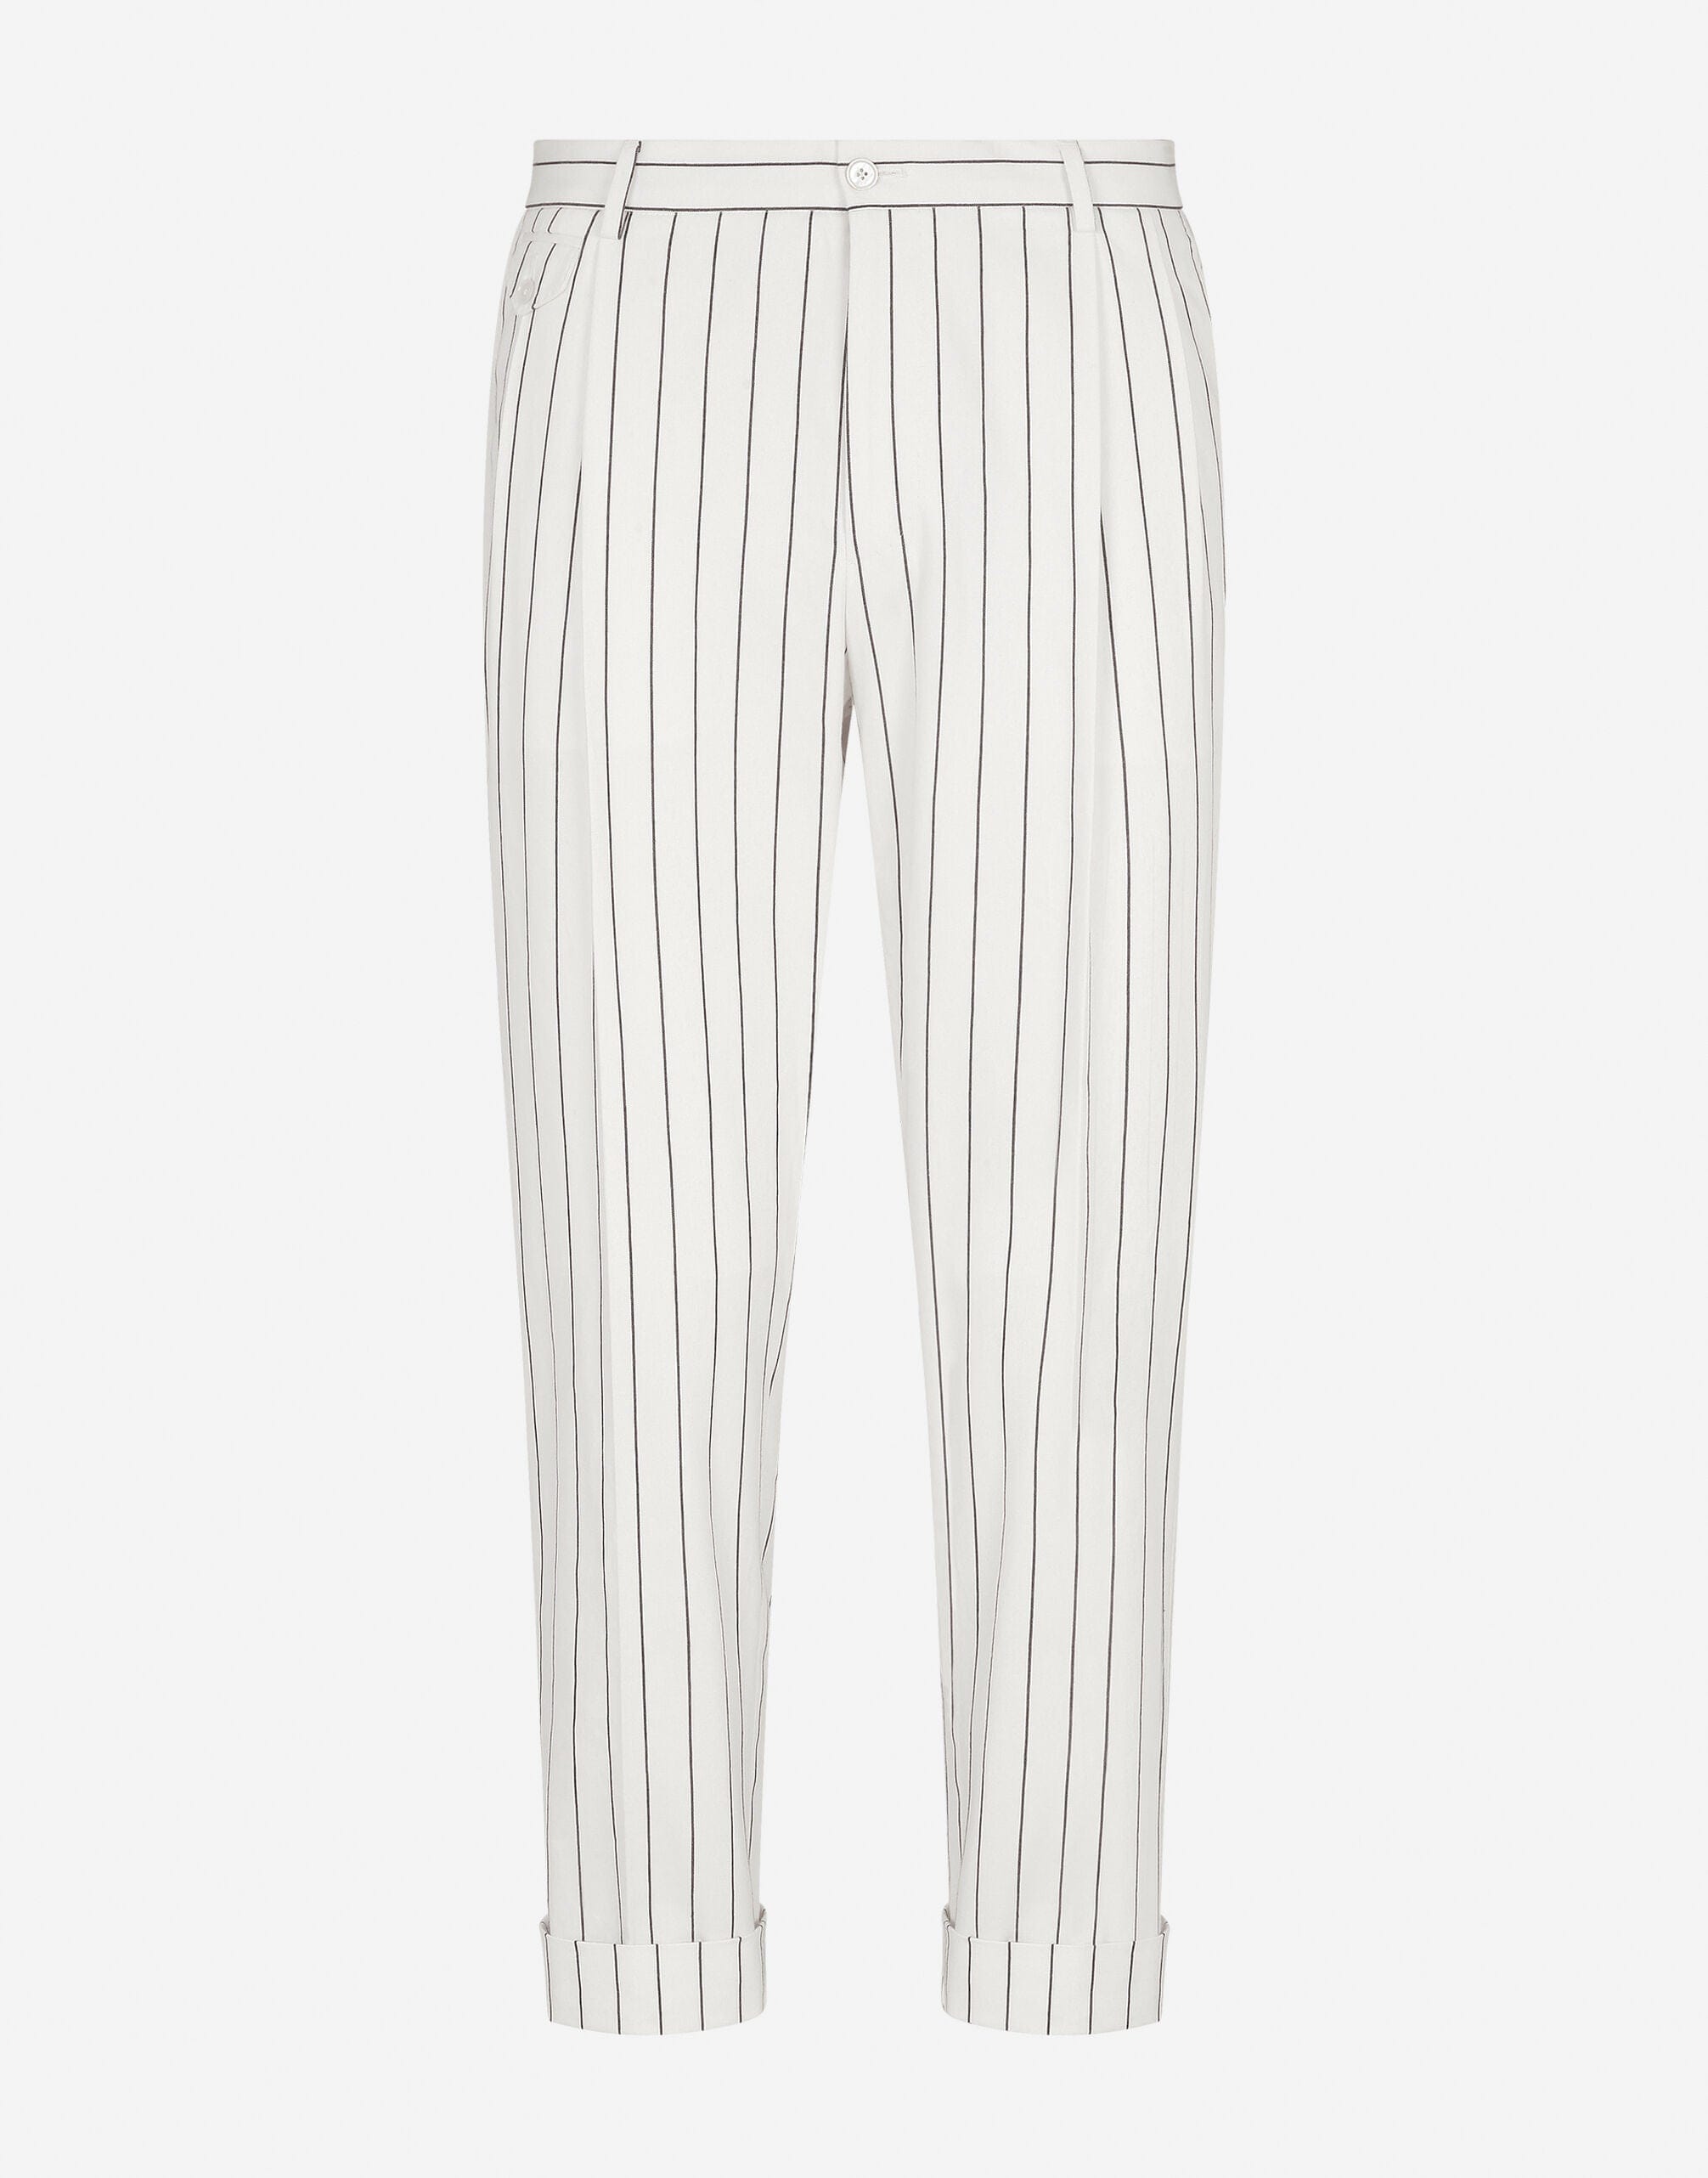 Dolce & Gabbana Pinstripe Stretch Cotton Pants